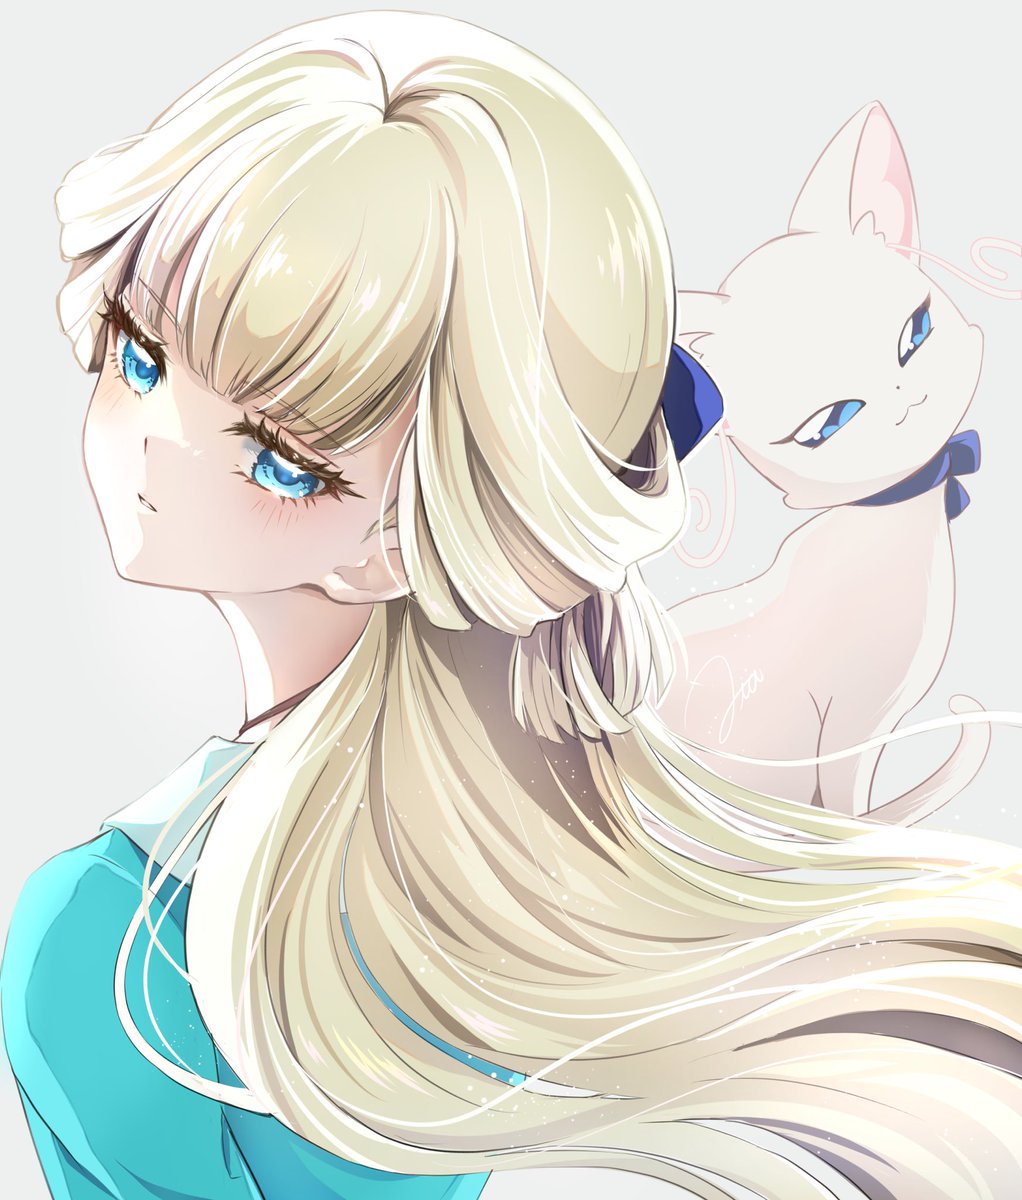 「ブルーの瞳に色白なお肌髪飾りのリボンがユキちゃんにそっくりな謎の美少女さん 」|Utaのイラスト